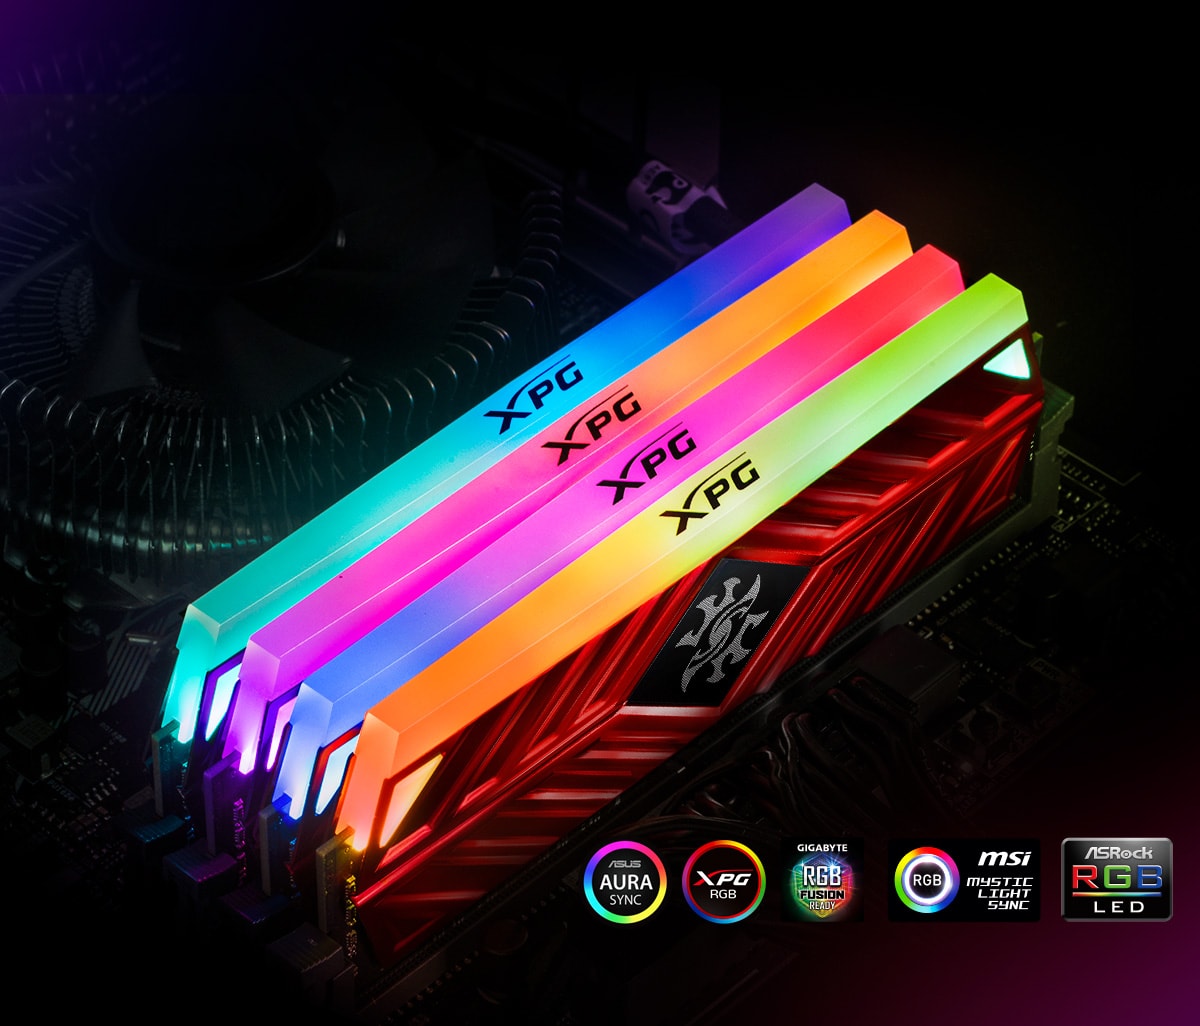 ADATA XPG Spectrix D41 RGB 16GB 3200MHz DDR4 RAM